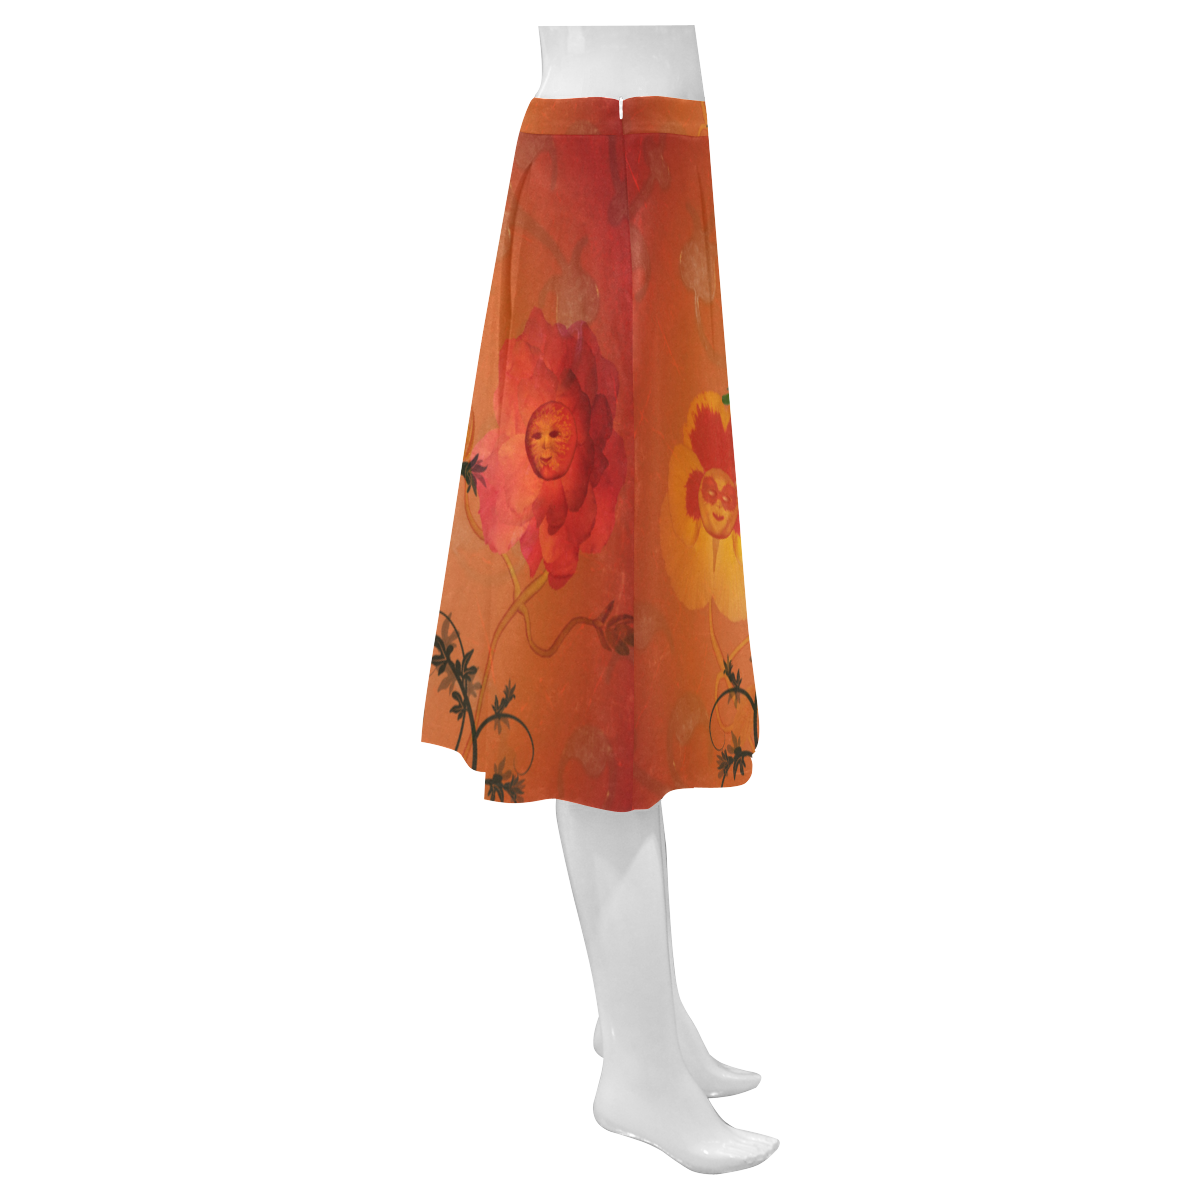 Fantasy flowers Mnemosyne Women's Crepe Skirt (Model D16)